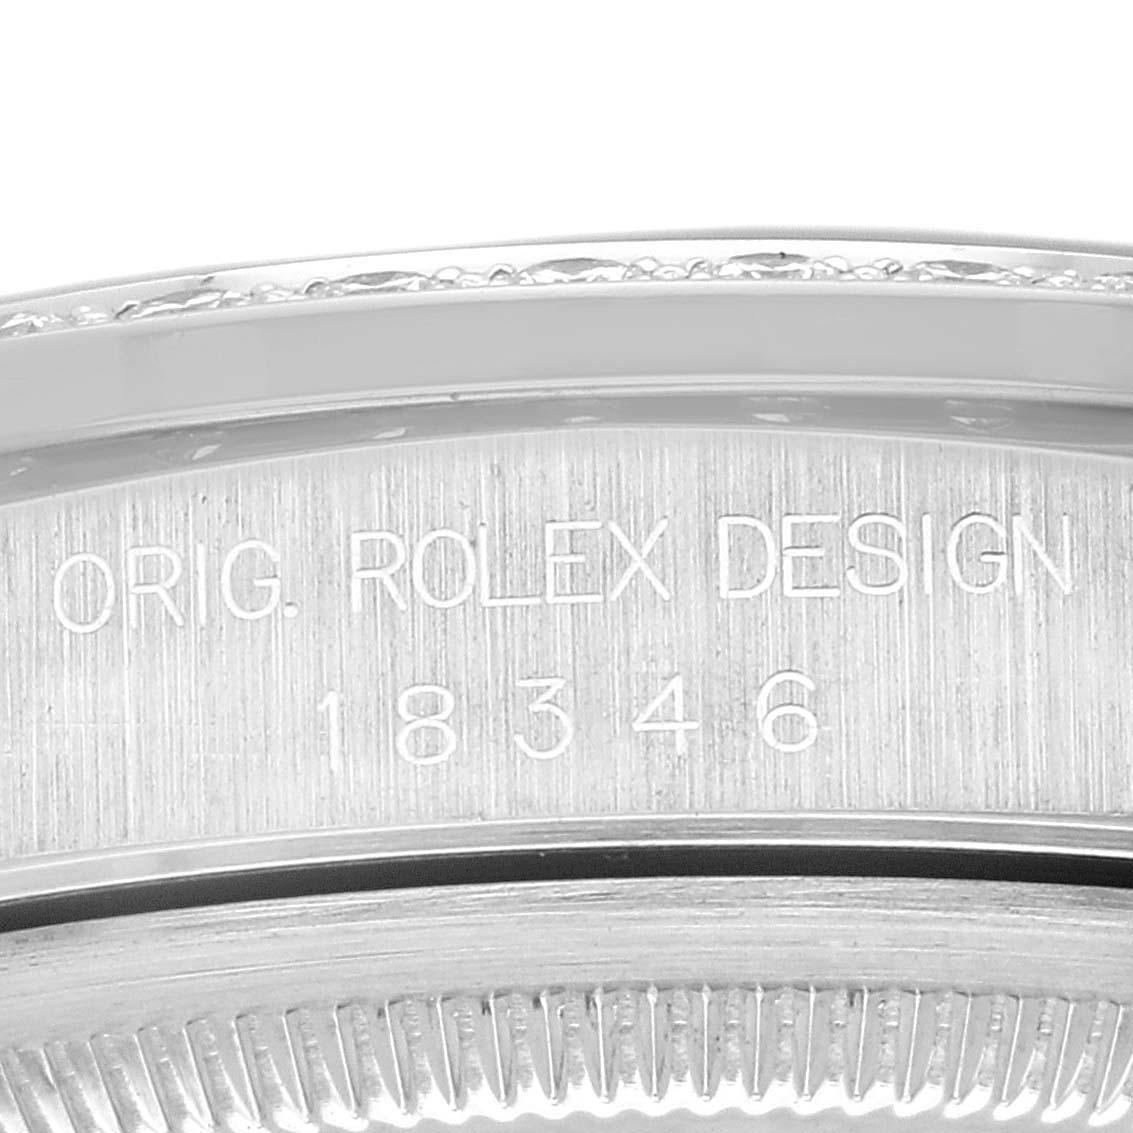 Rolex President Day-Date Platin Blau Myriad Diamond Dial Herrenuhr 18346. Offiziell zertifiziertes Chronometerwerk mit automatischem Aufzug. Platin-Oyster-Gehäuse mit einem Durchmesser von 36,0 mm. Rolex Logo auf einer Krone. Original Rolex Fabrik